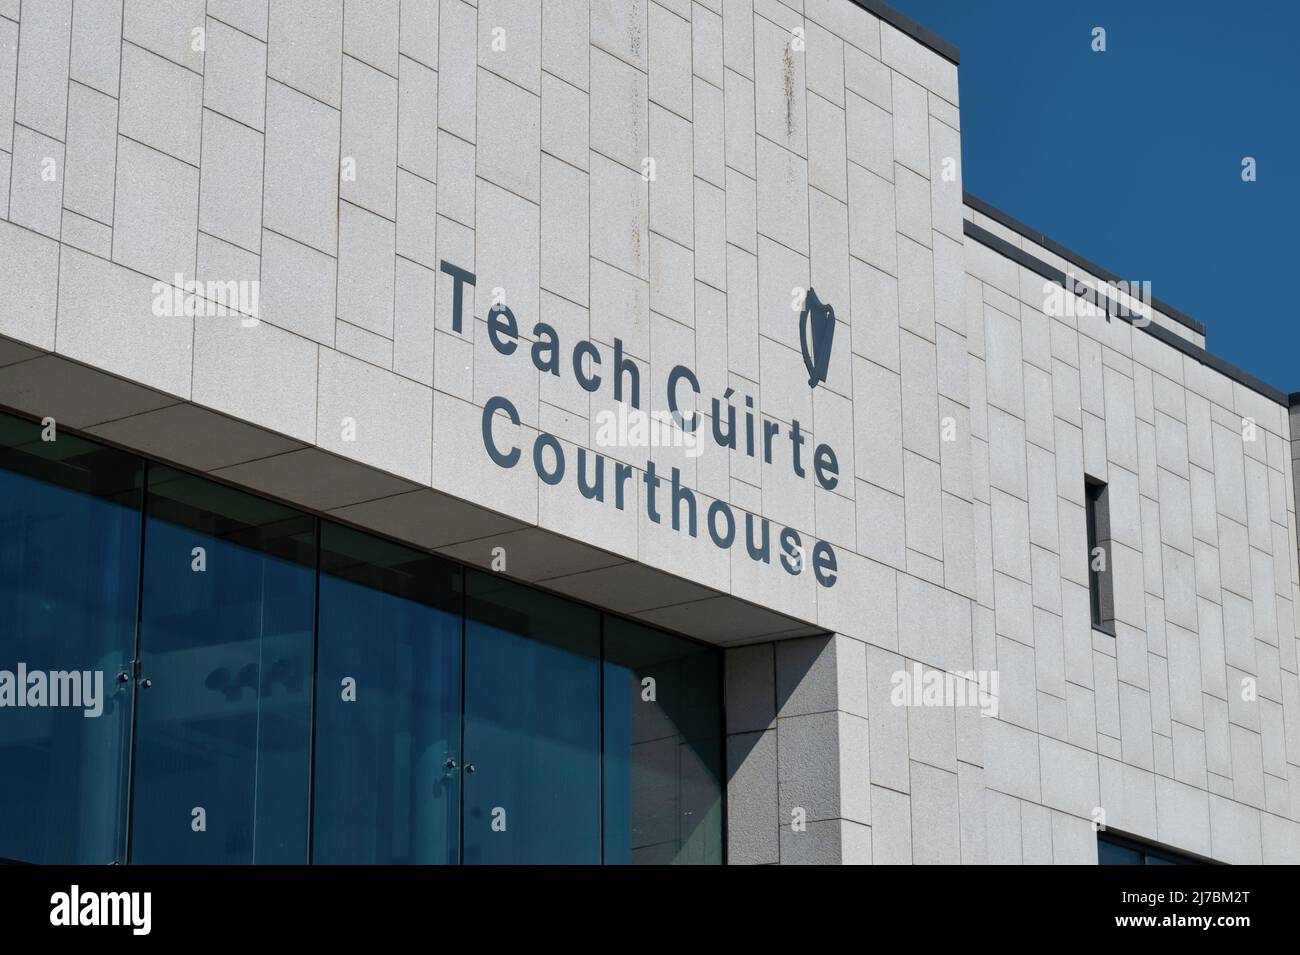 Kilkenny, Irland - 20. April 2022: Das Zeichen für Teach Cuirte Courthouse in Kilkenny, Irland. Stockfoto